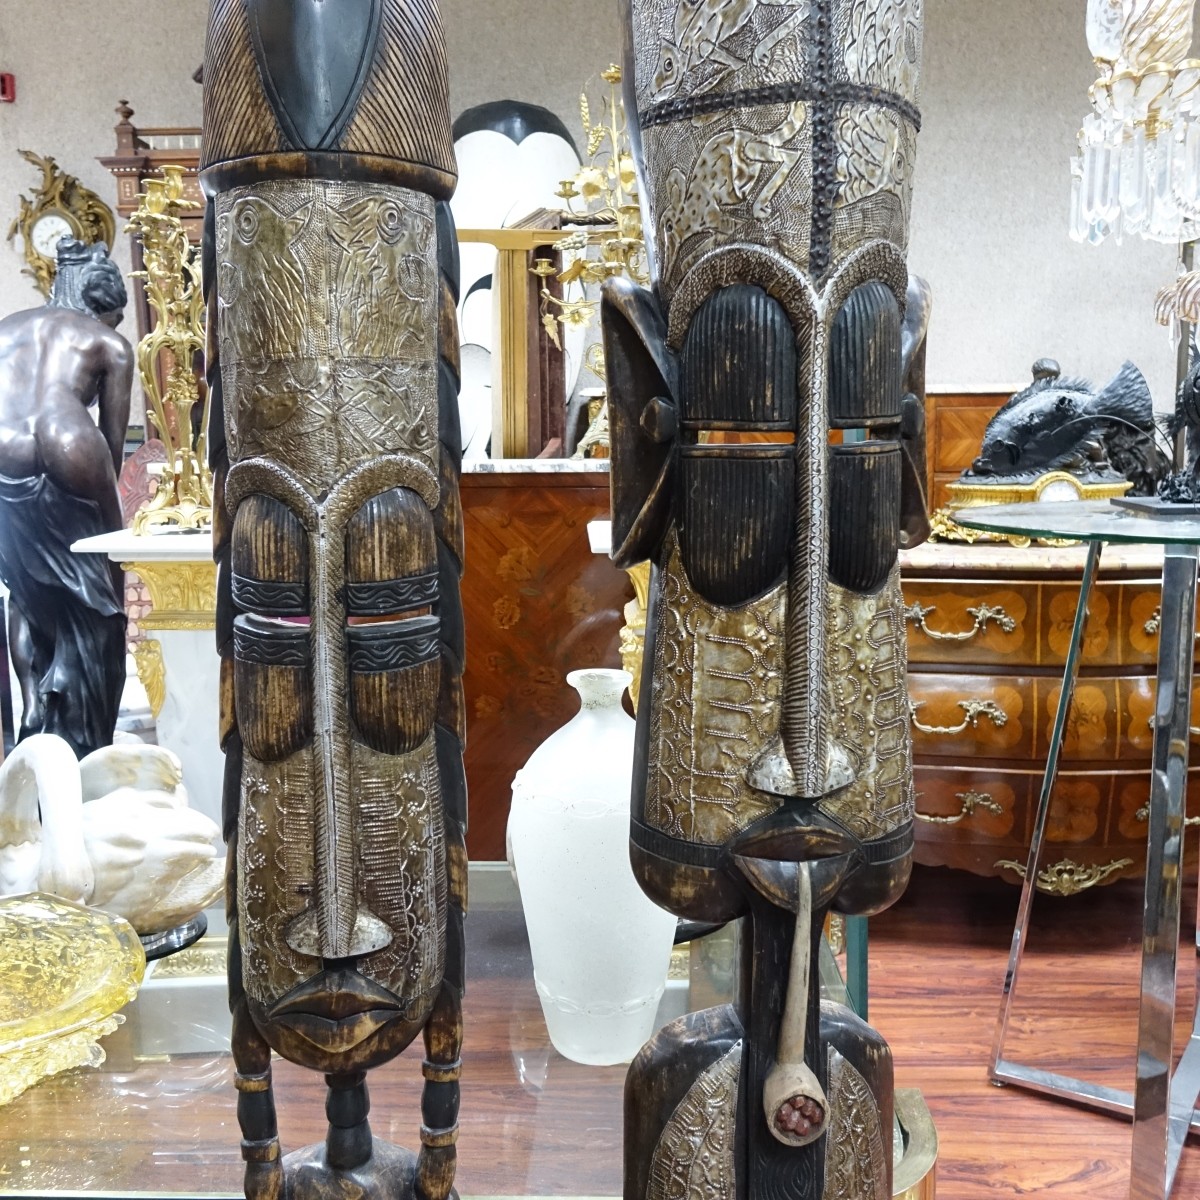 Carved African Masks